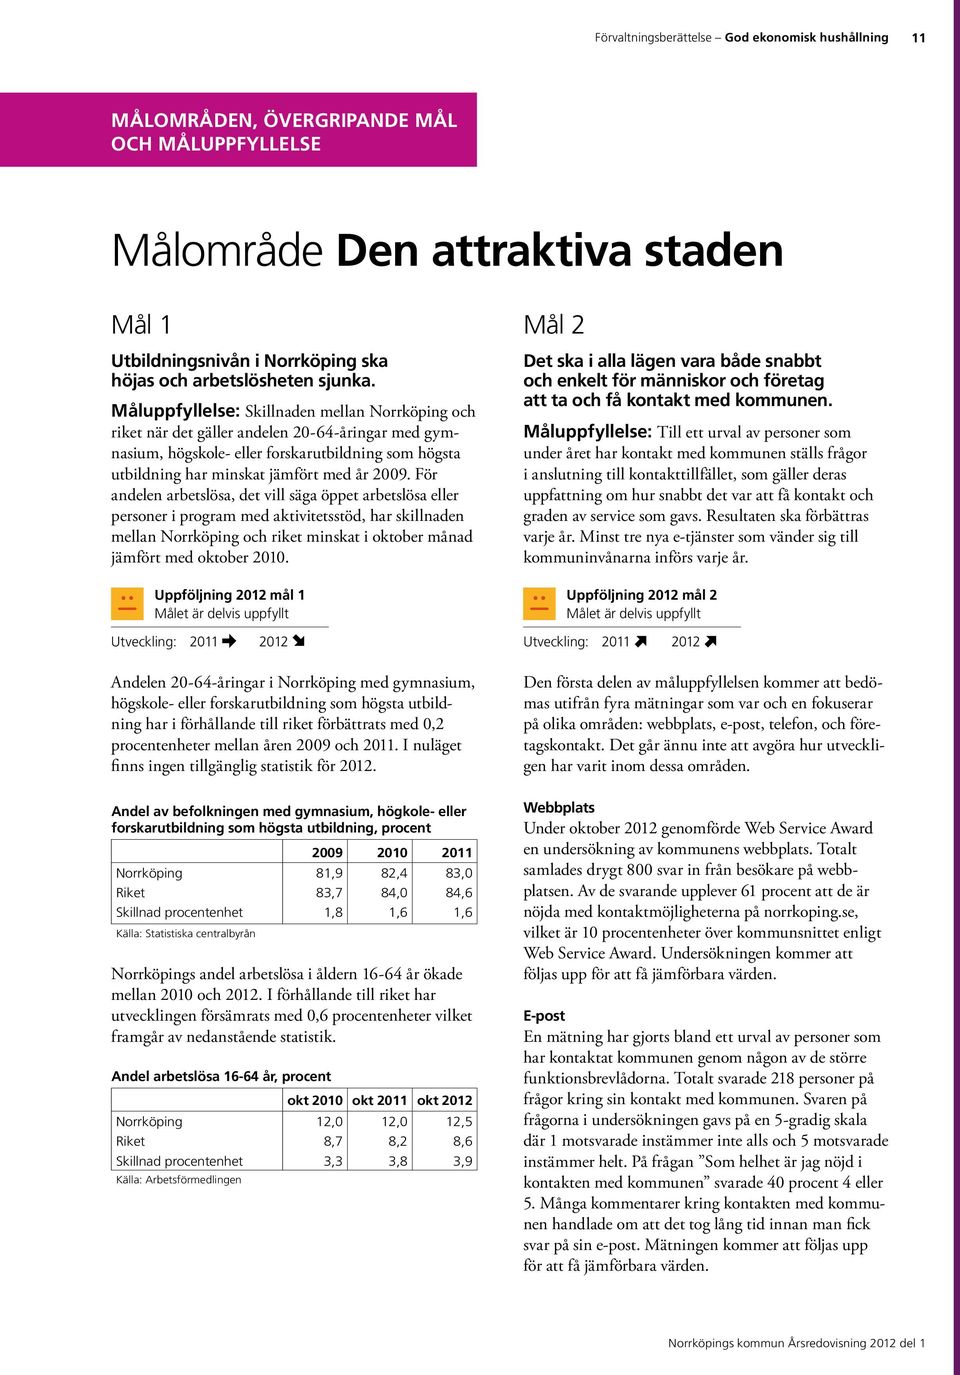 Måluppfyllelse: Skillnaden mellan Norrköping och riket när det gäller andelen 20-64-åringar med gymnasium, högskole- eller forskarutbildning som högsta utbildning har minskat jämfört med år 2009.